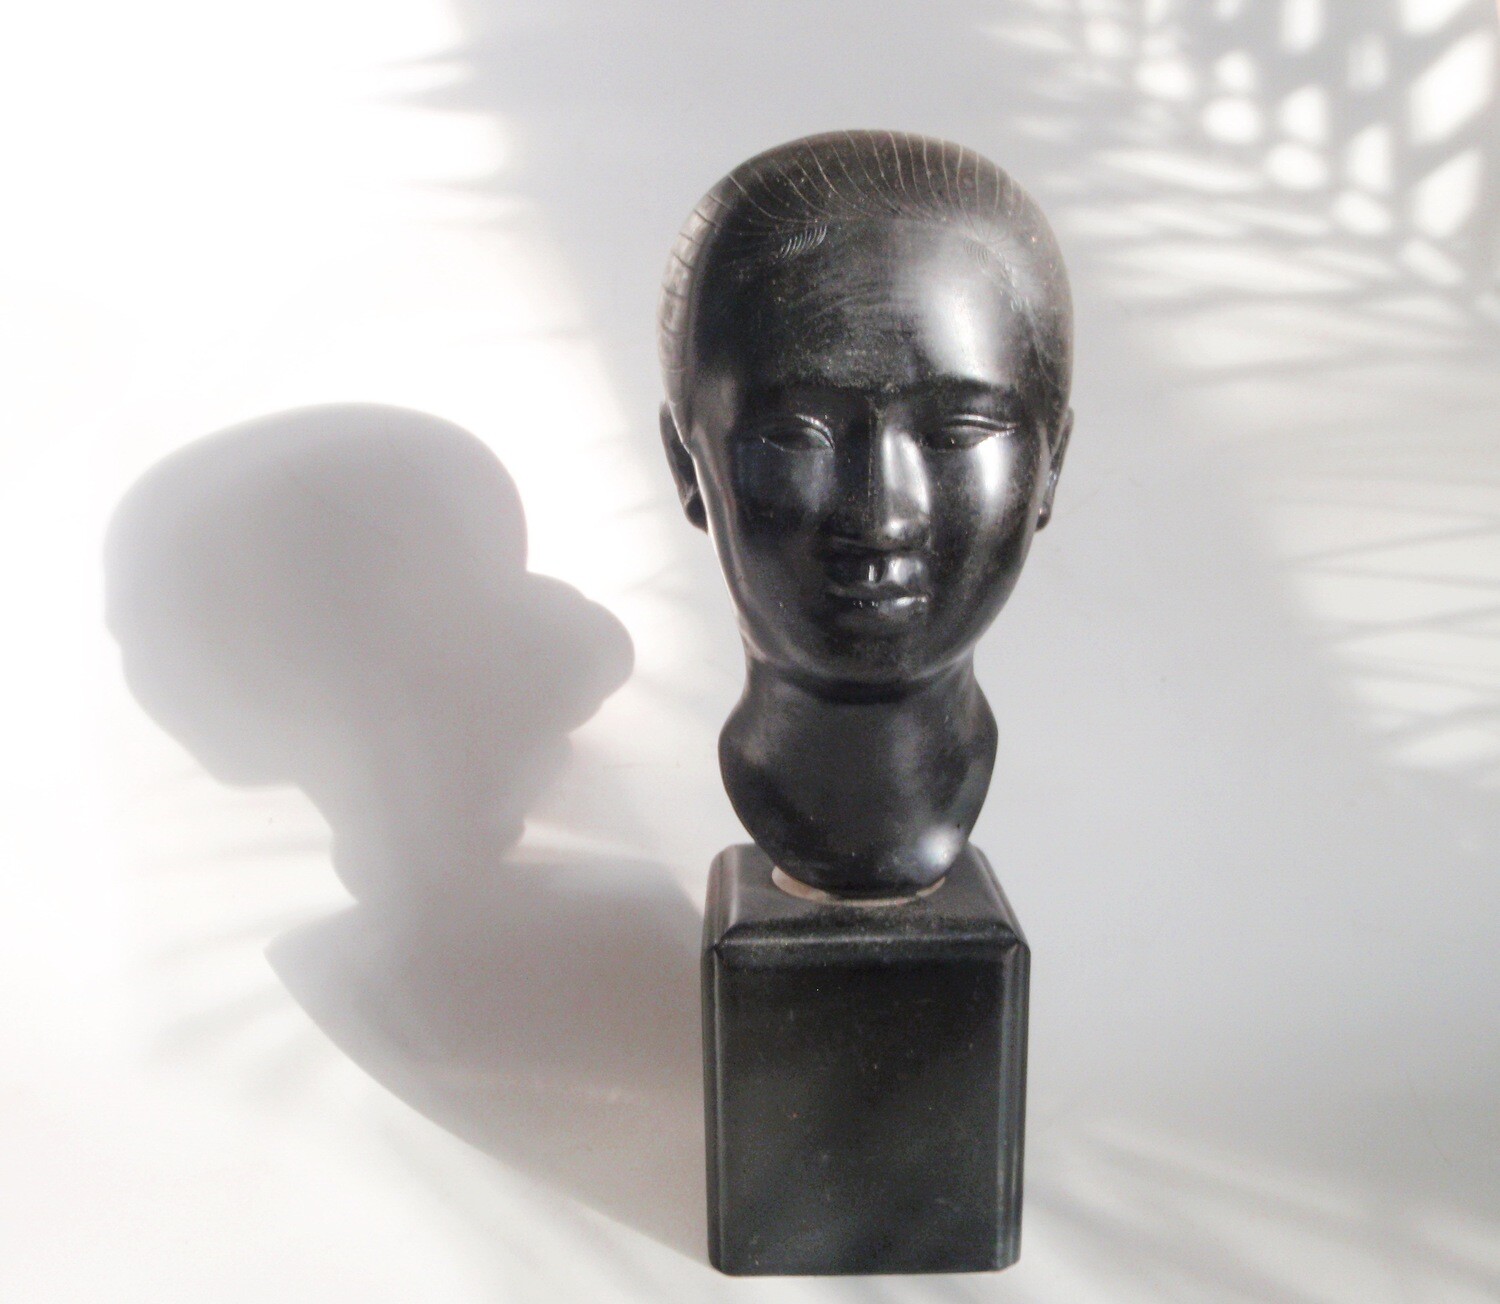 1920s Art Deco Woman Bust Sculpture Decorative Accent Statue